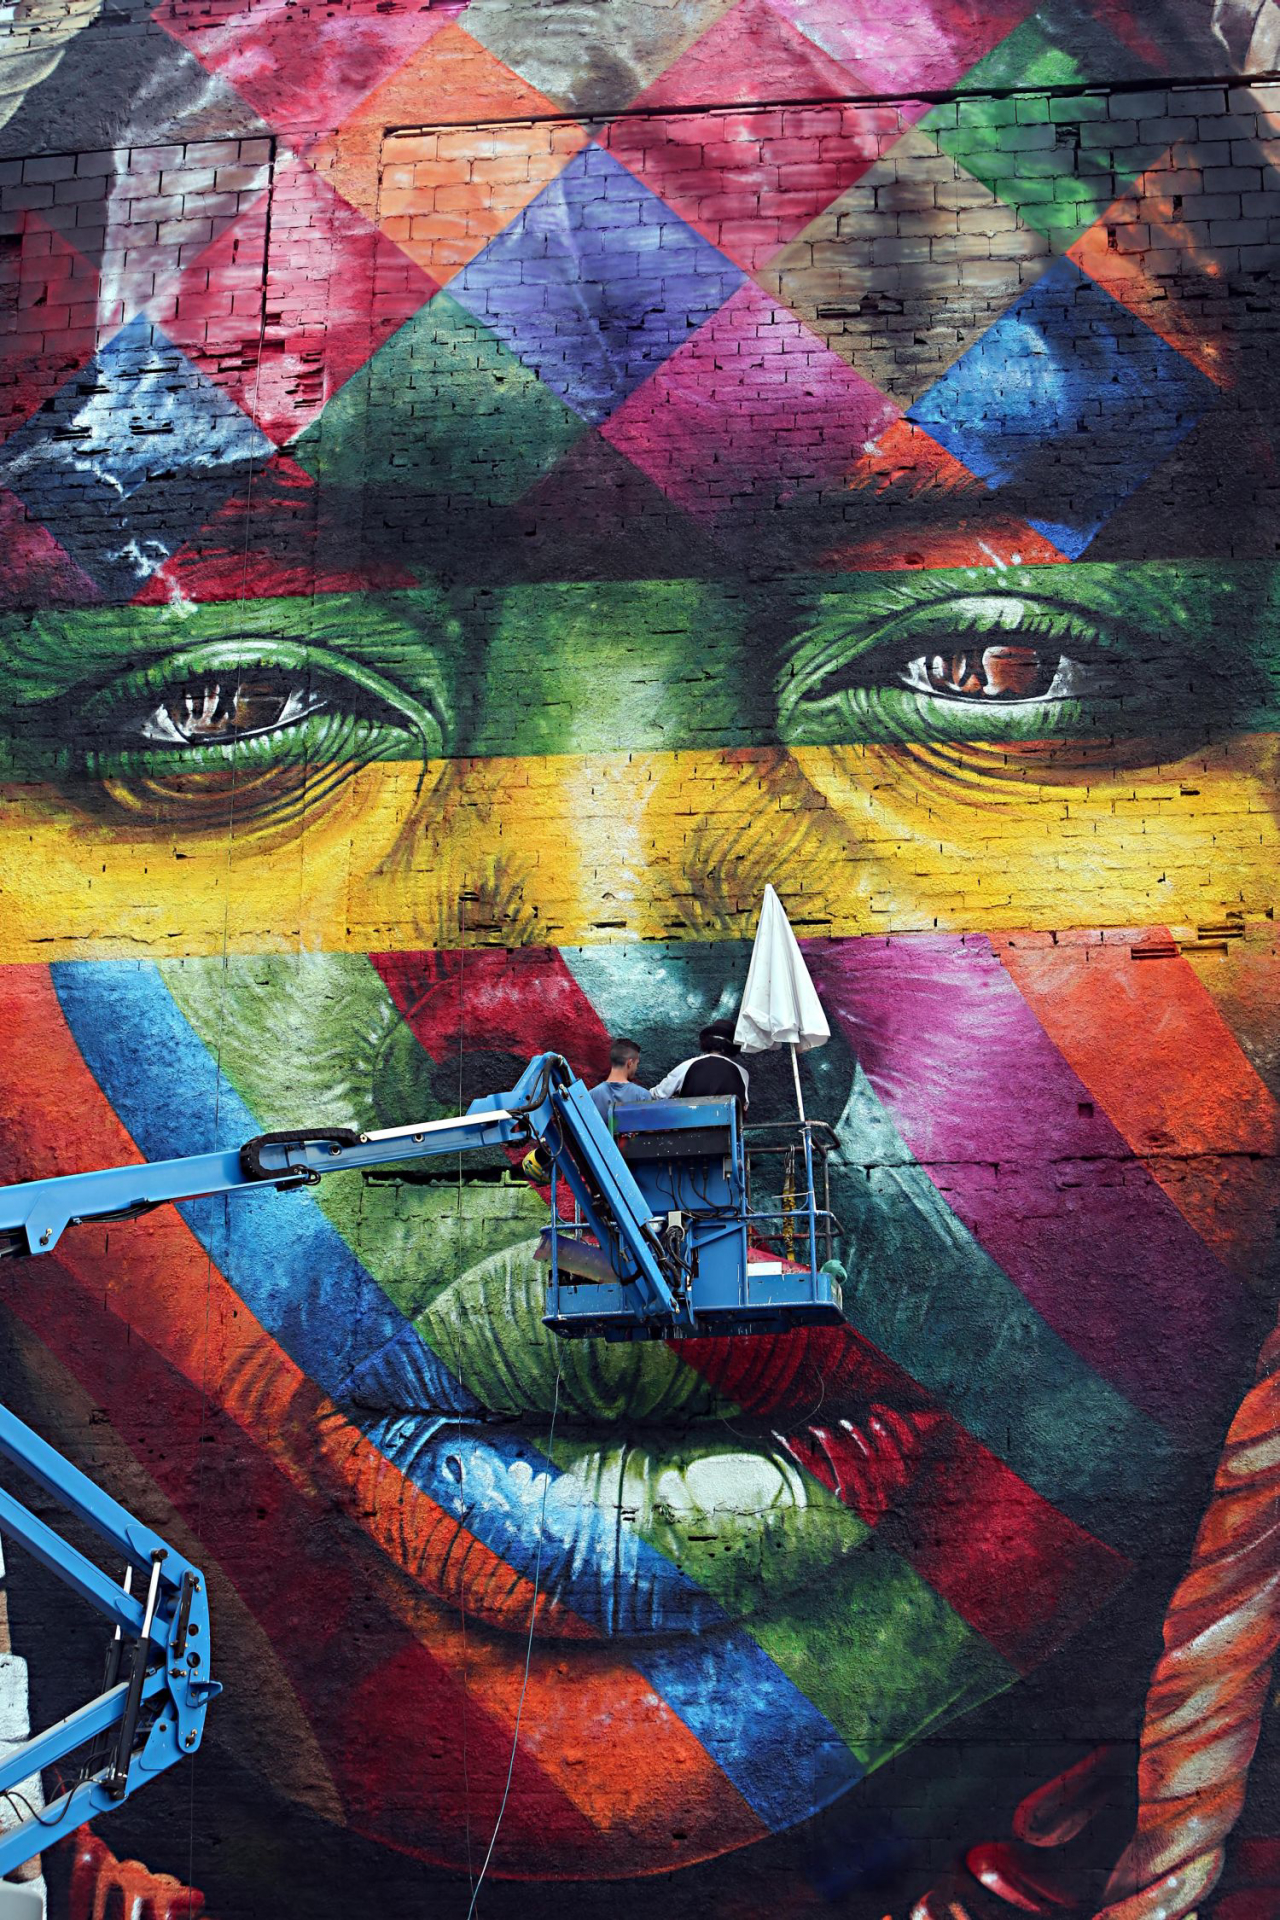 Painel feito por Eduardo Kobra na Zona Portuária do Rio durante a finalização.<br>Foto: Albari Rosa / Gazeta do Povo 